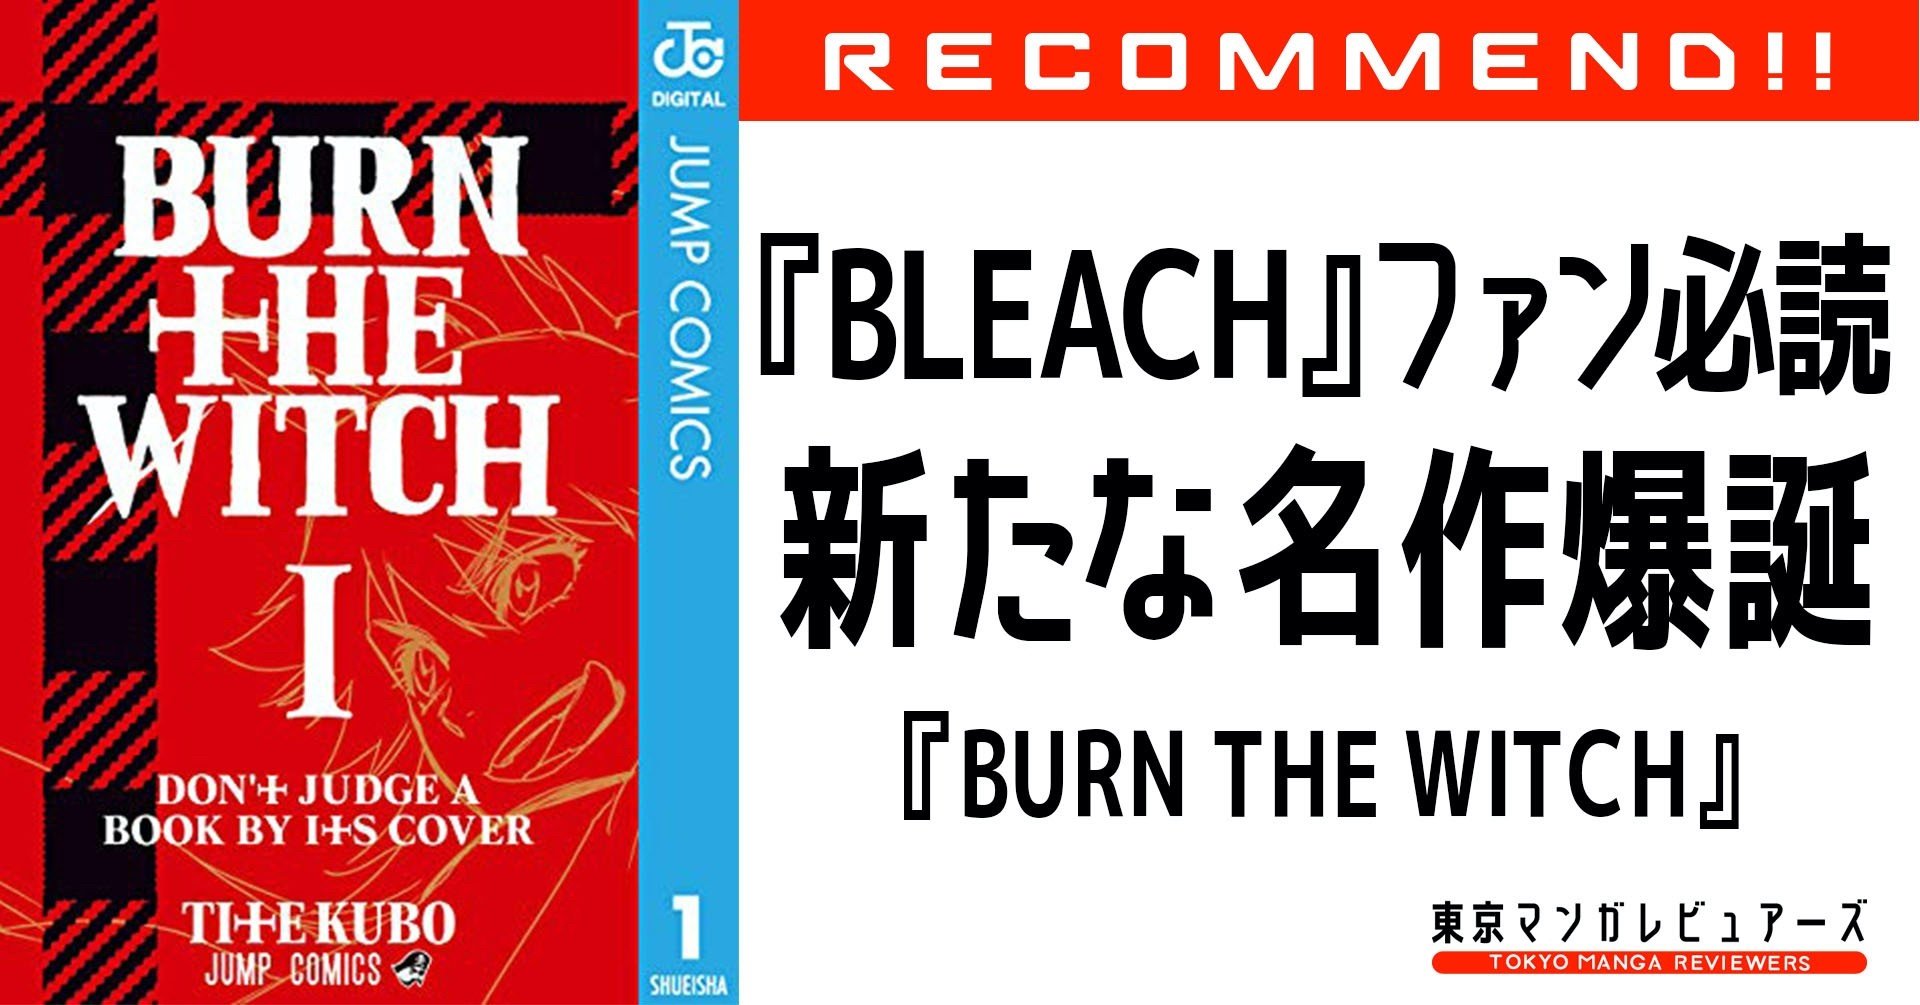 新たな名作が誕生 Bleach から受け継がれる魅力と伝説の幕開け Burn The Witch 東京マンガレビュアーズ